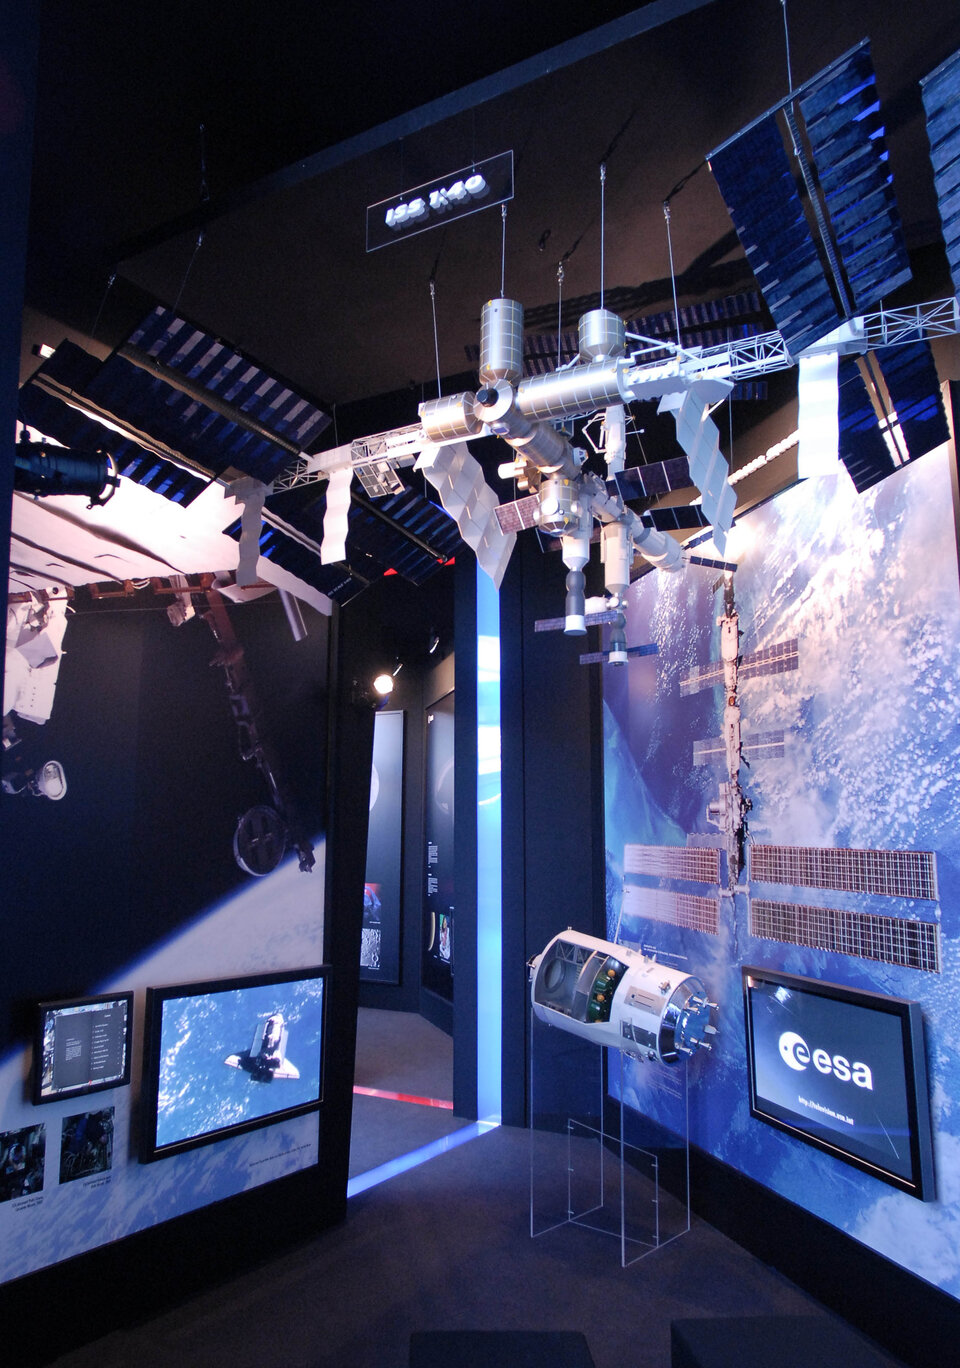 El área de infraestructura espacial muestra la contribución de Europa a la ISS